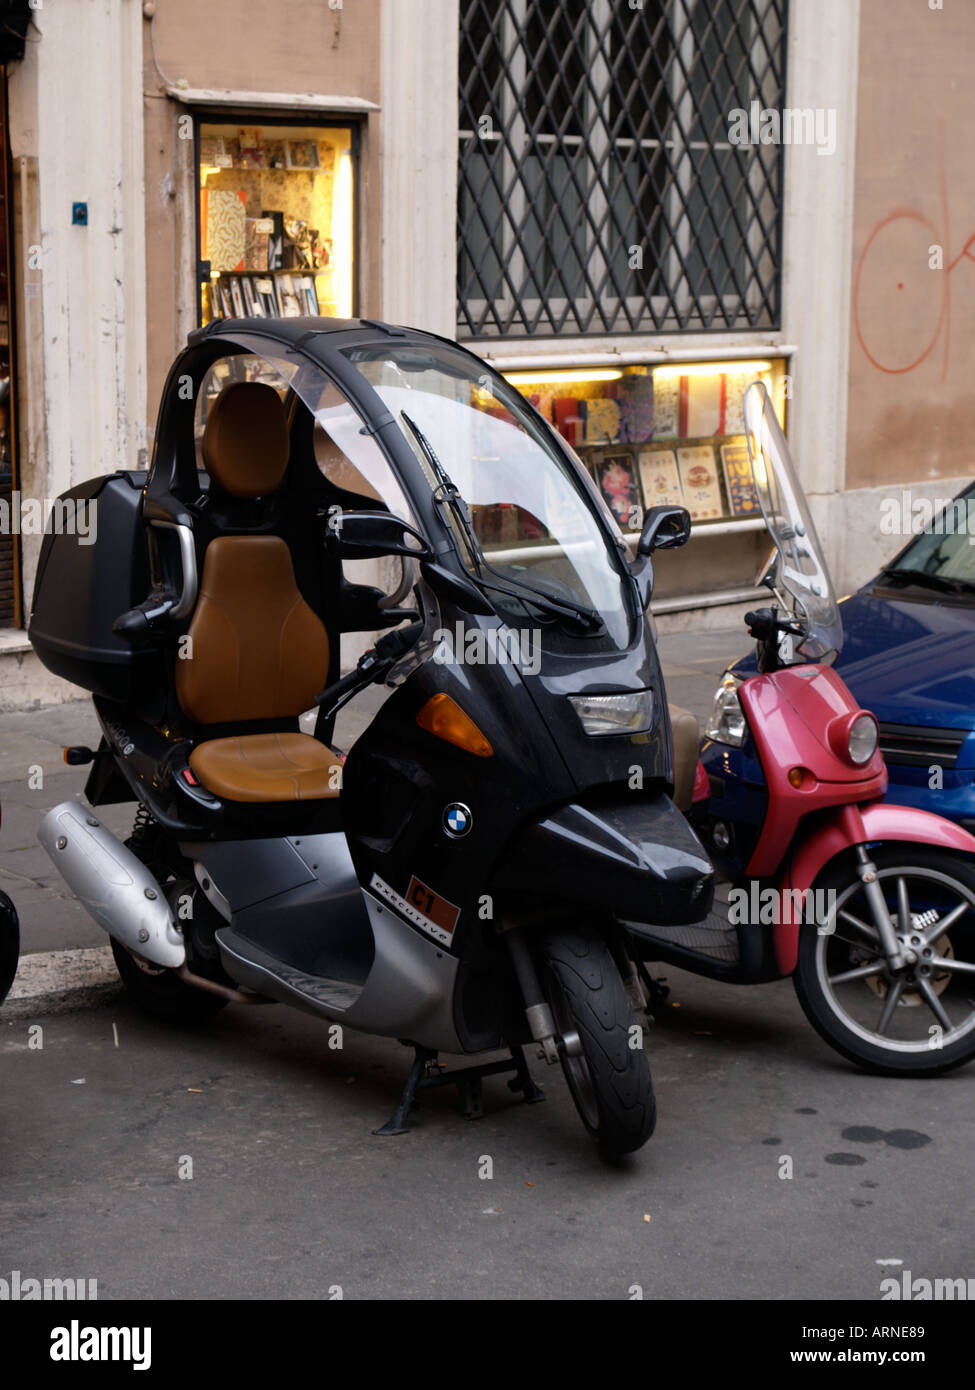 BMW C1 Executive Roller urban Fahrzeug Motorrad mit Dach geparkt in einer  Straße in Rom Stockfotografie - Alamy